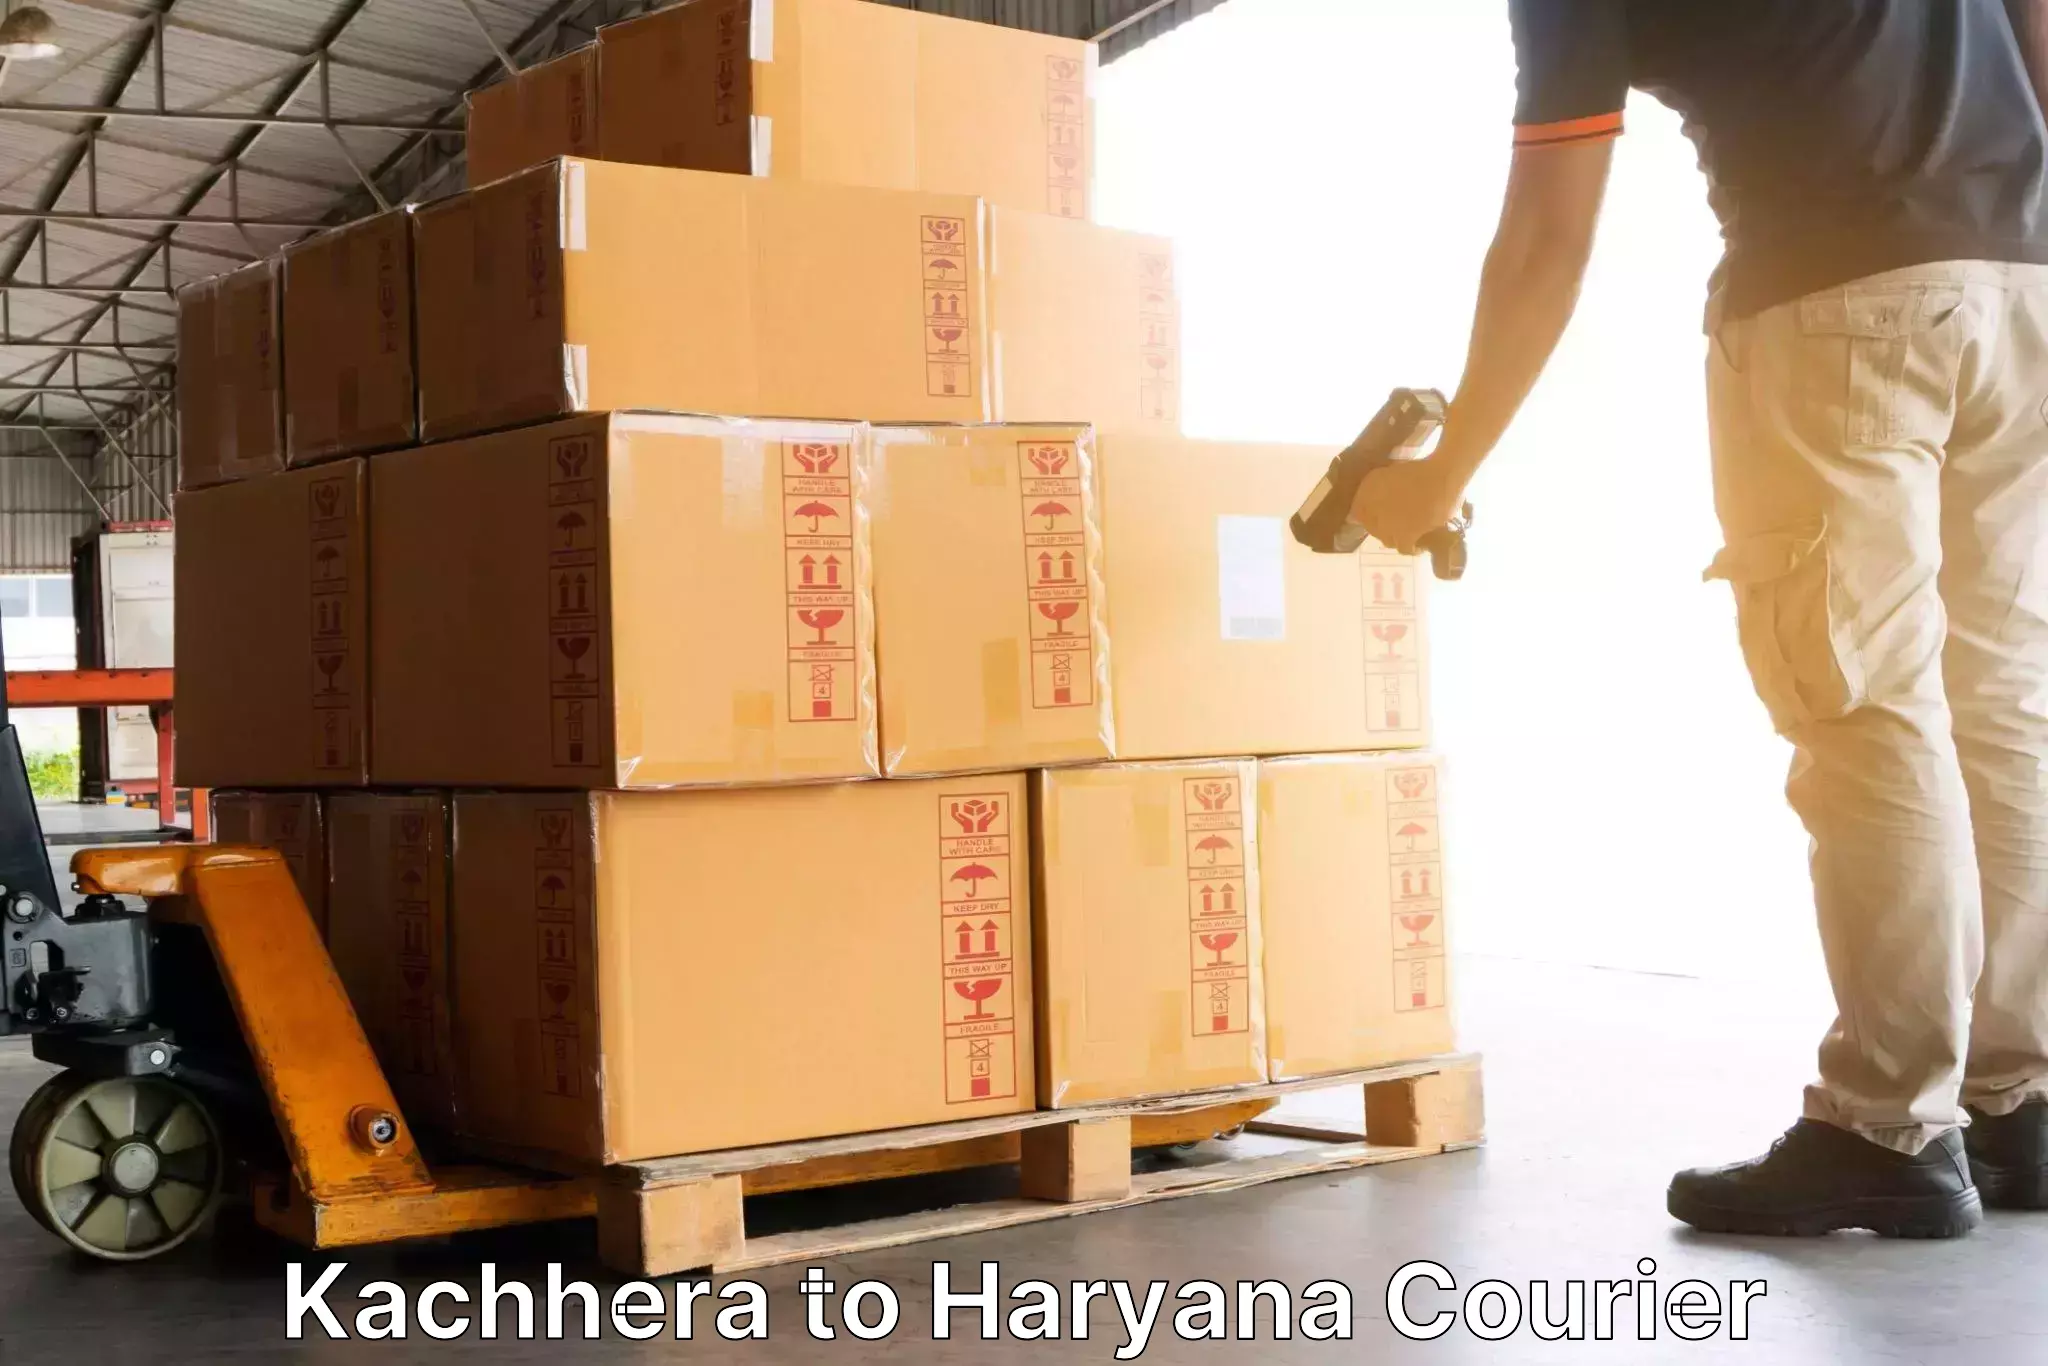 Cost-effective courier options Kachhera to Shahabad Markanda